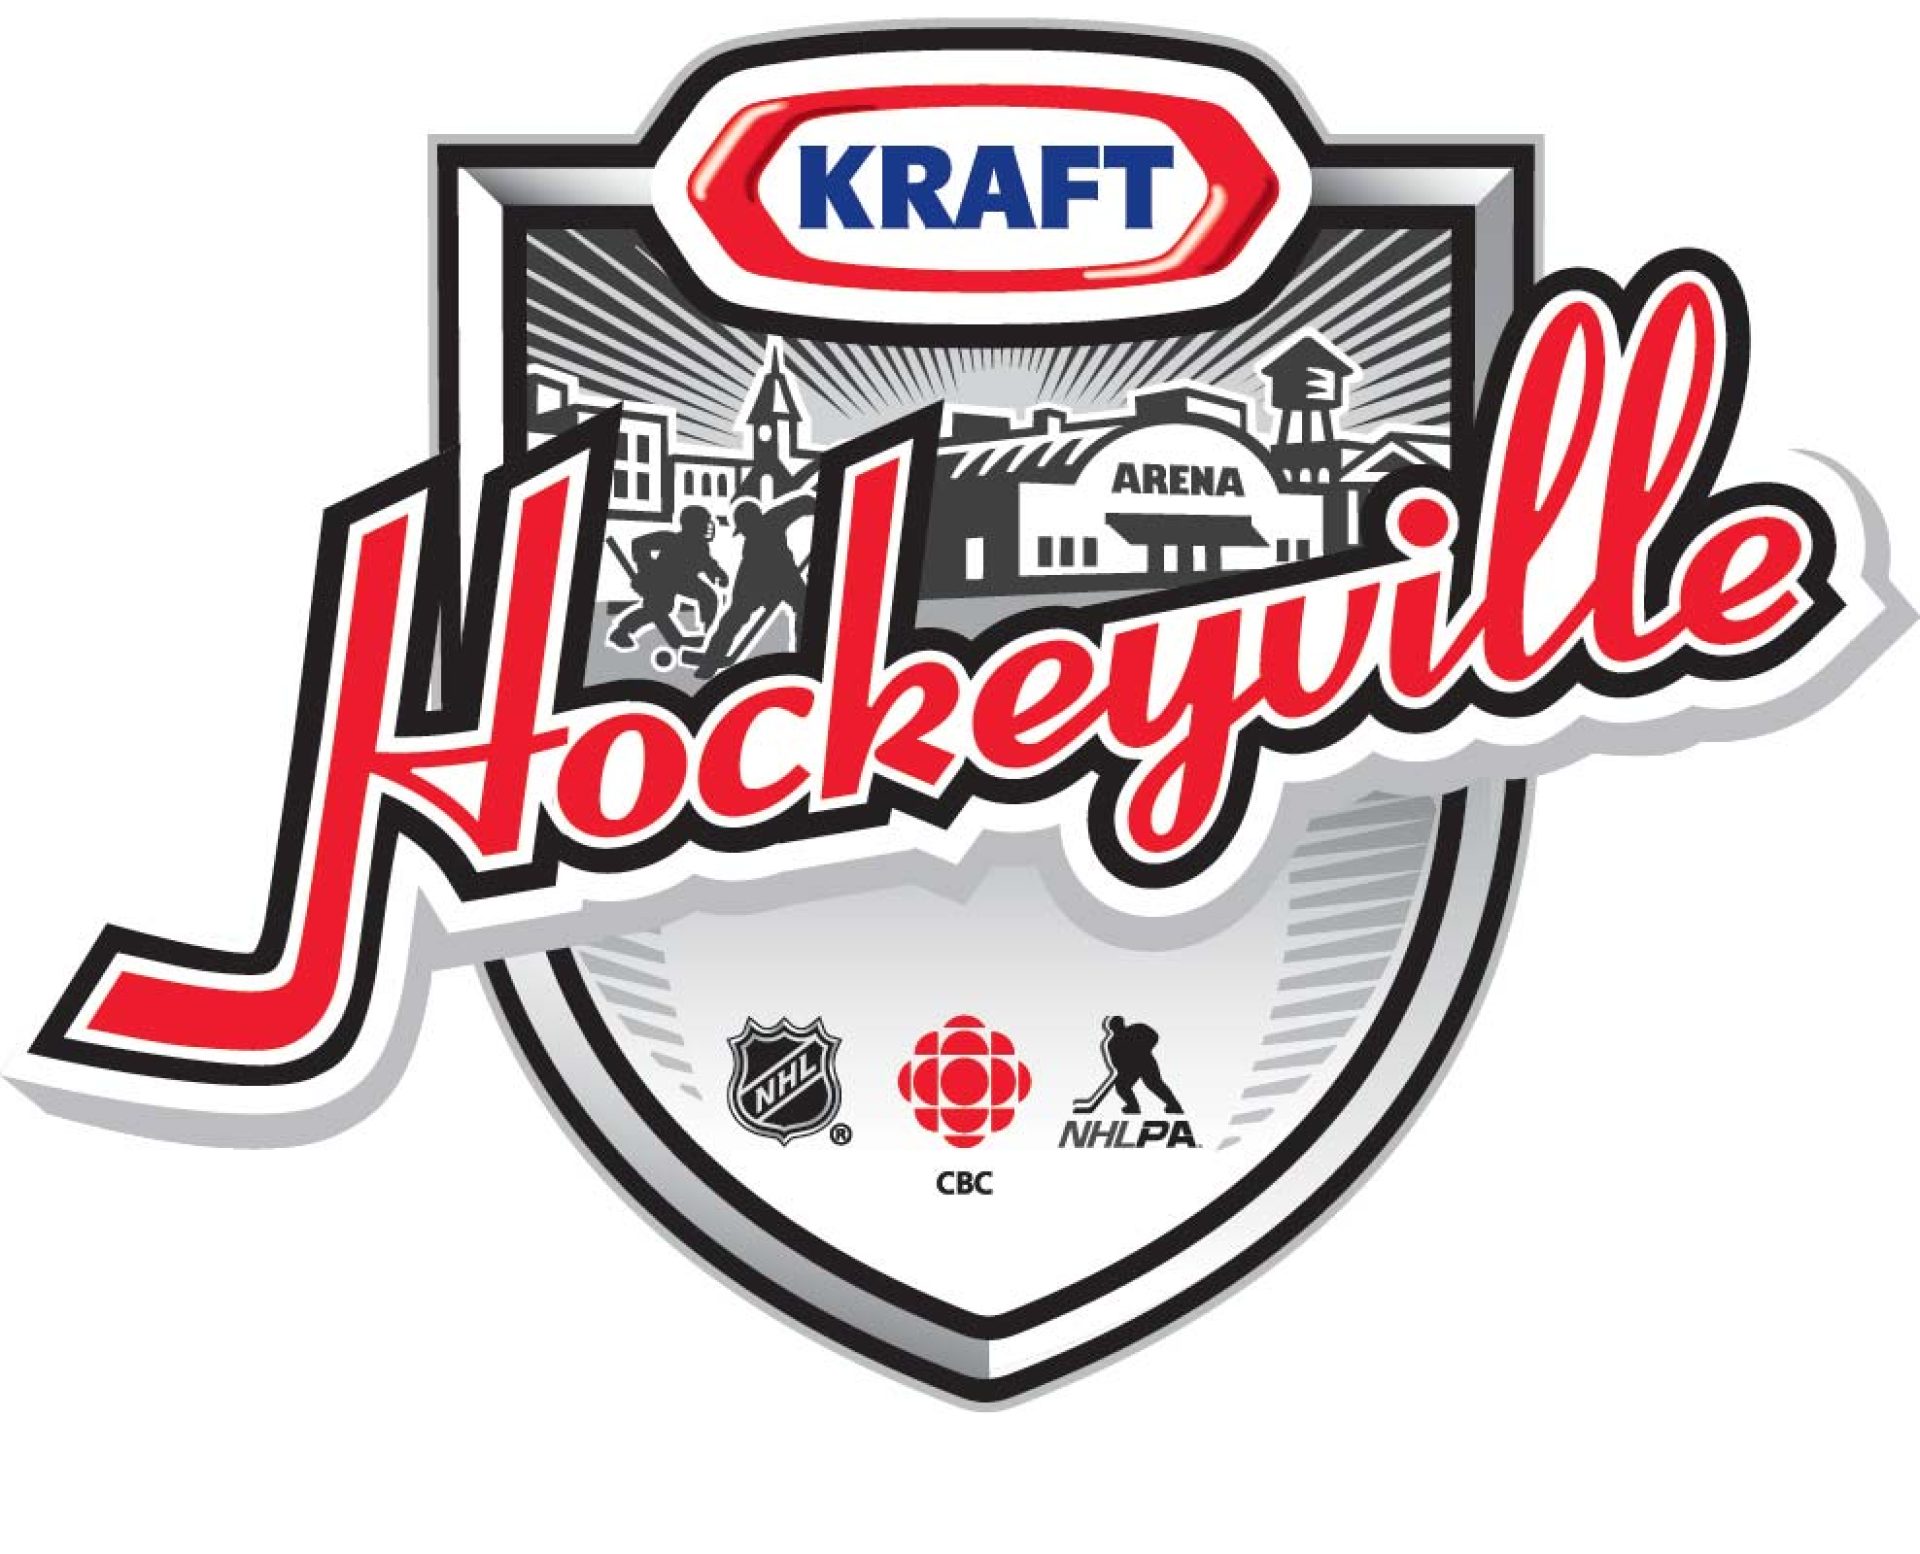 HockeyVille_E_Logo_PMS-2013